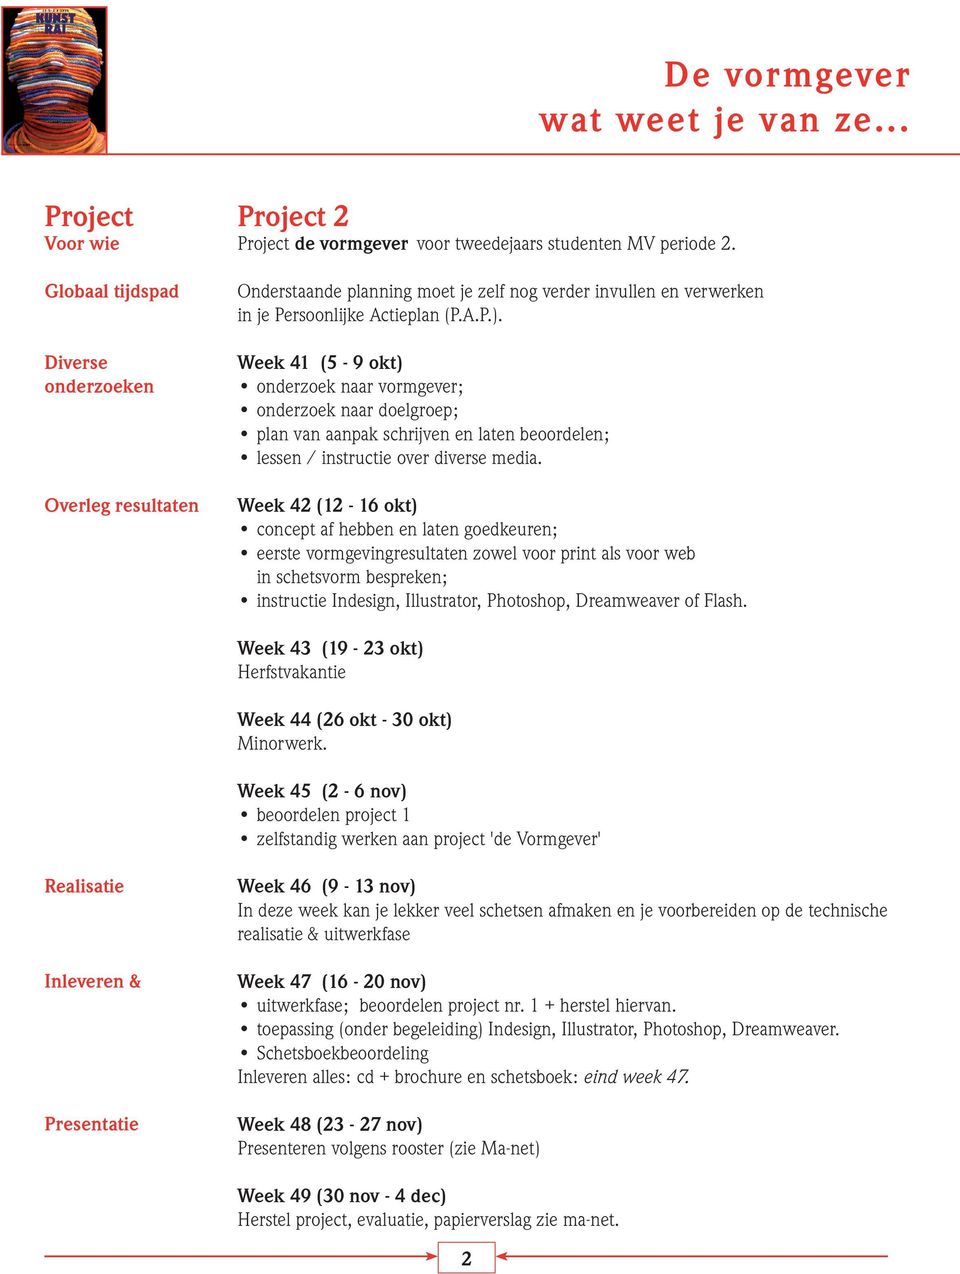 Week 41 (5-9 okt) onderzoek naar vormgever; onderzoek naar doelgroep; plan van aanpak schrijven en laten beoordelen; lessen / instructie over diverse media.